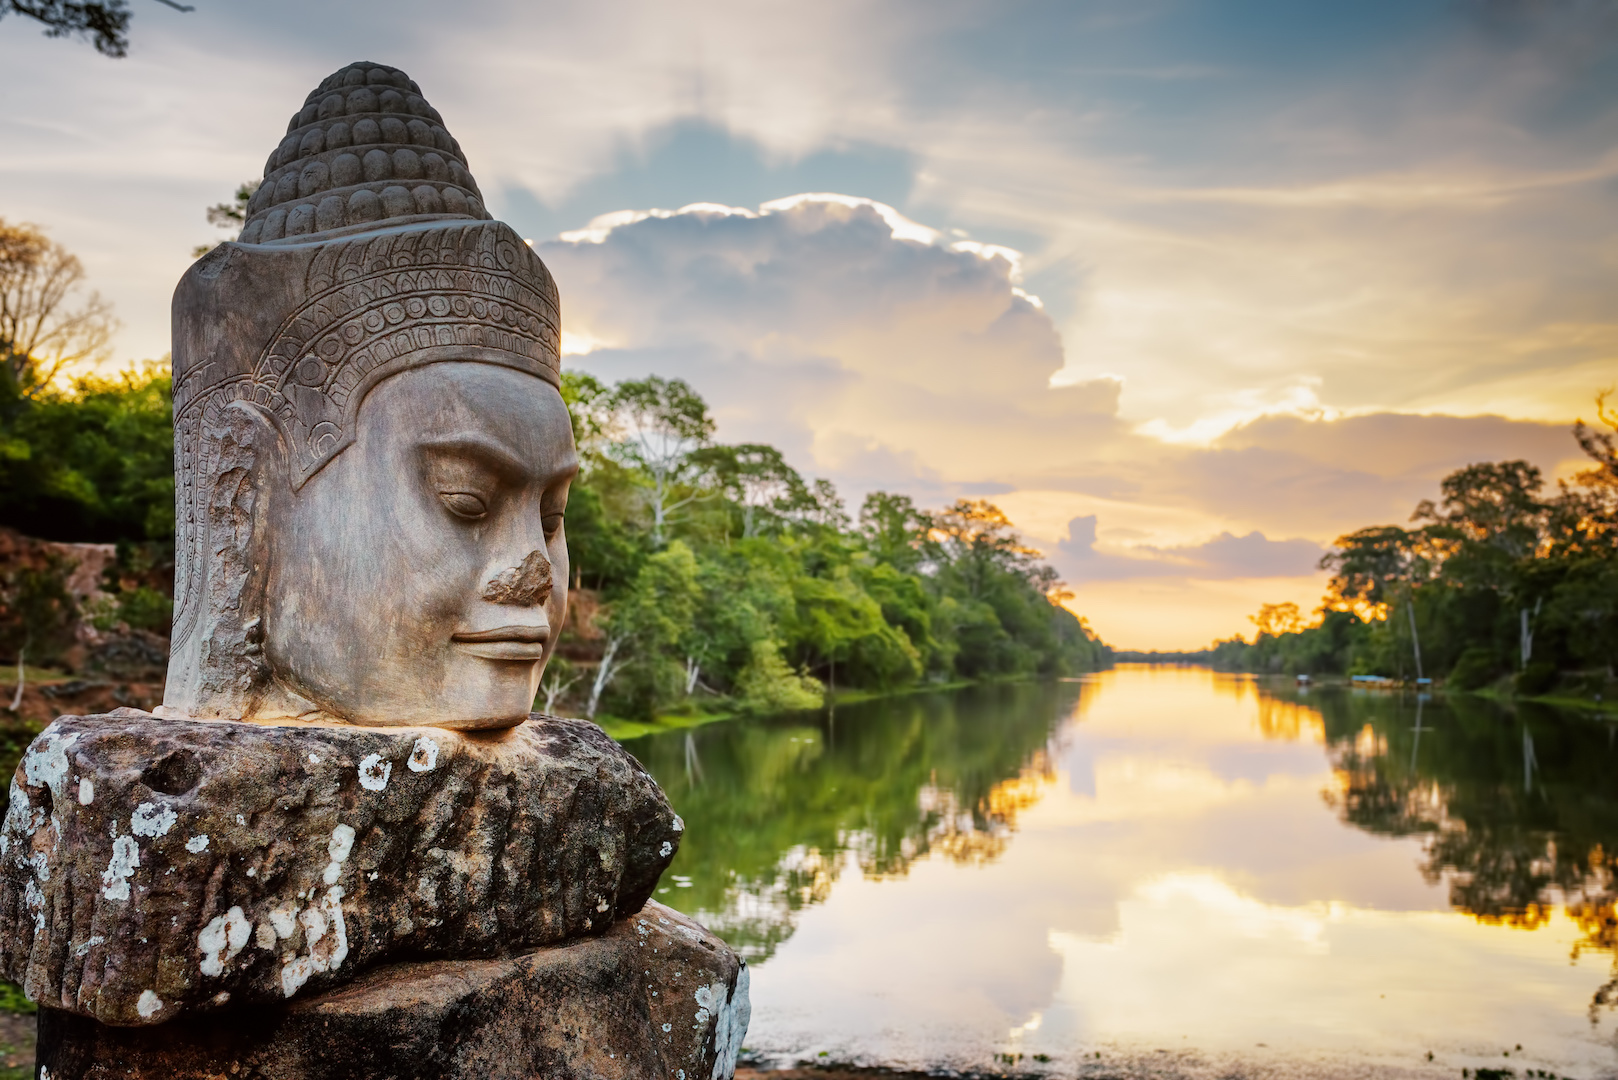 Indokiinan kiertomatka - Kambodzha ja Vietnam matkat